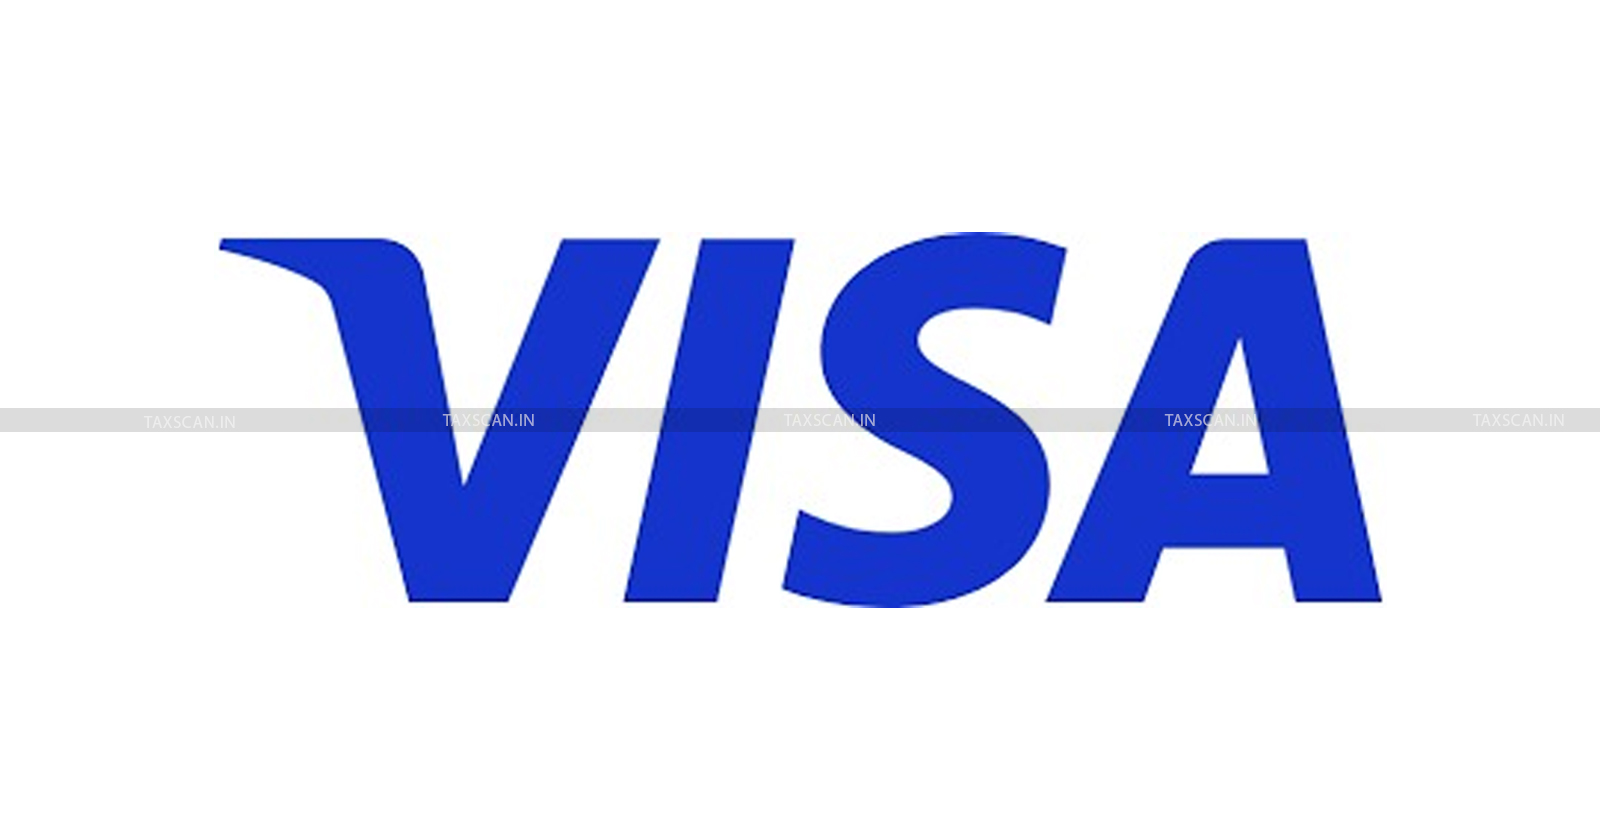 CA Vacancy in Visa - CA Vacancy in visa - job vacancy in visa - TAXSCAN